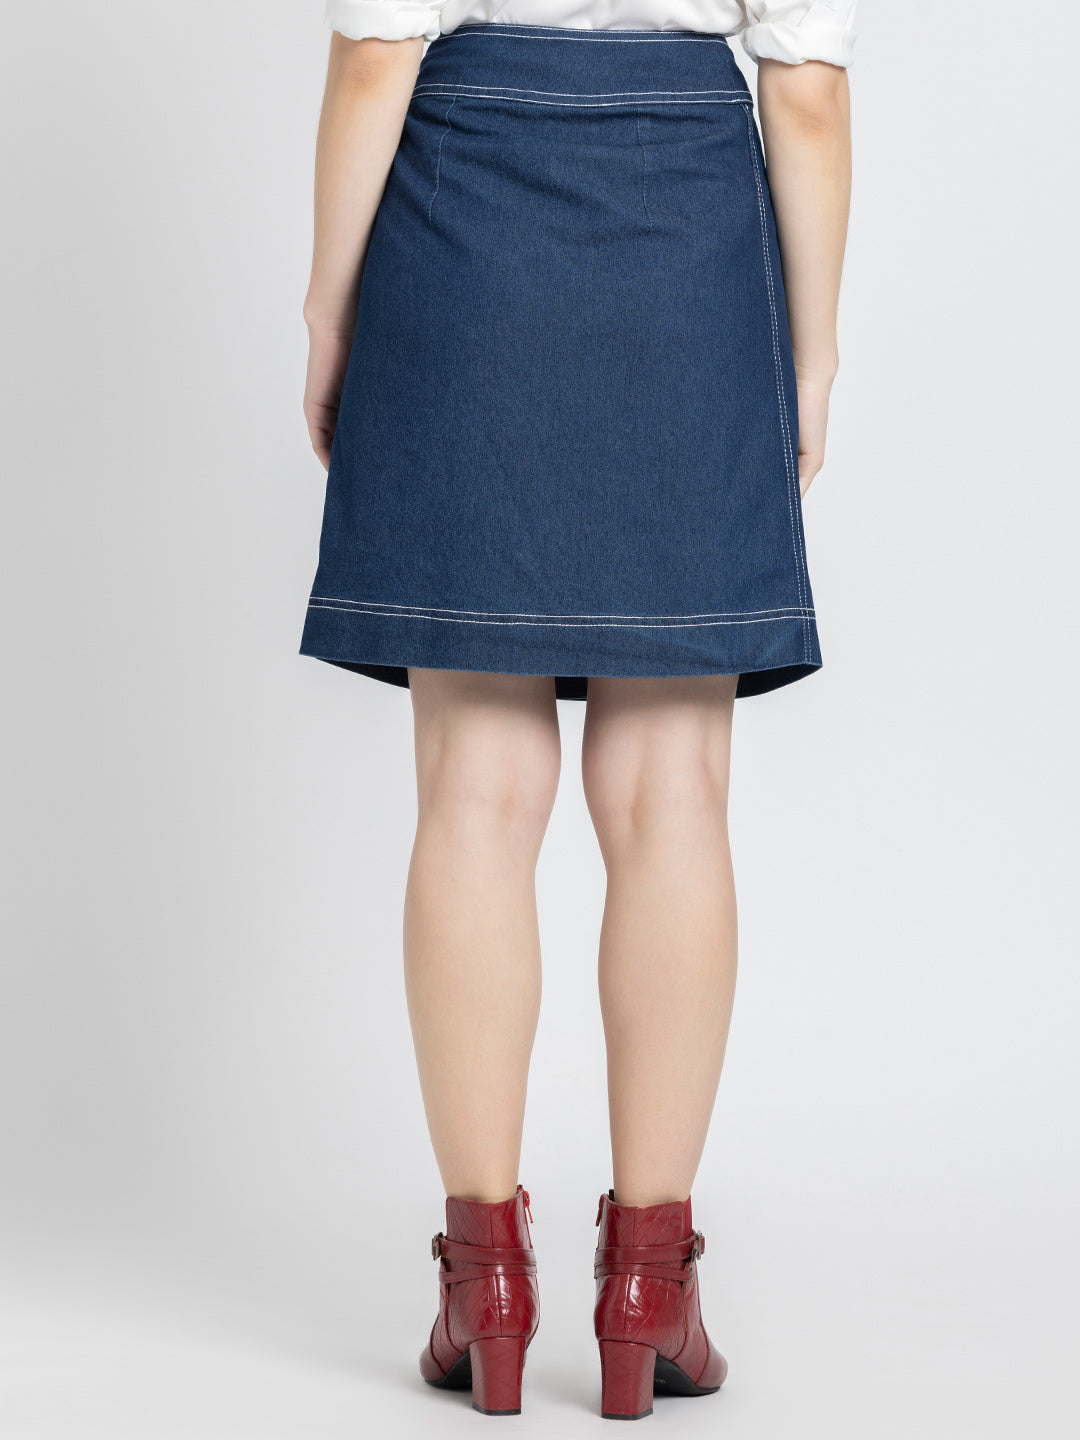 Astral Denim Skirt from Shaye , Skirt for women